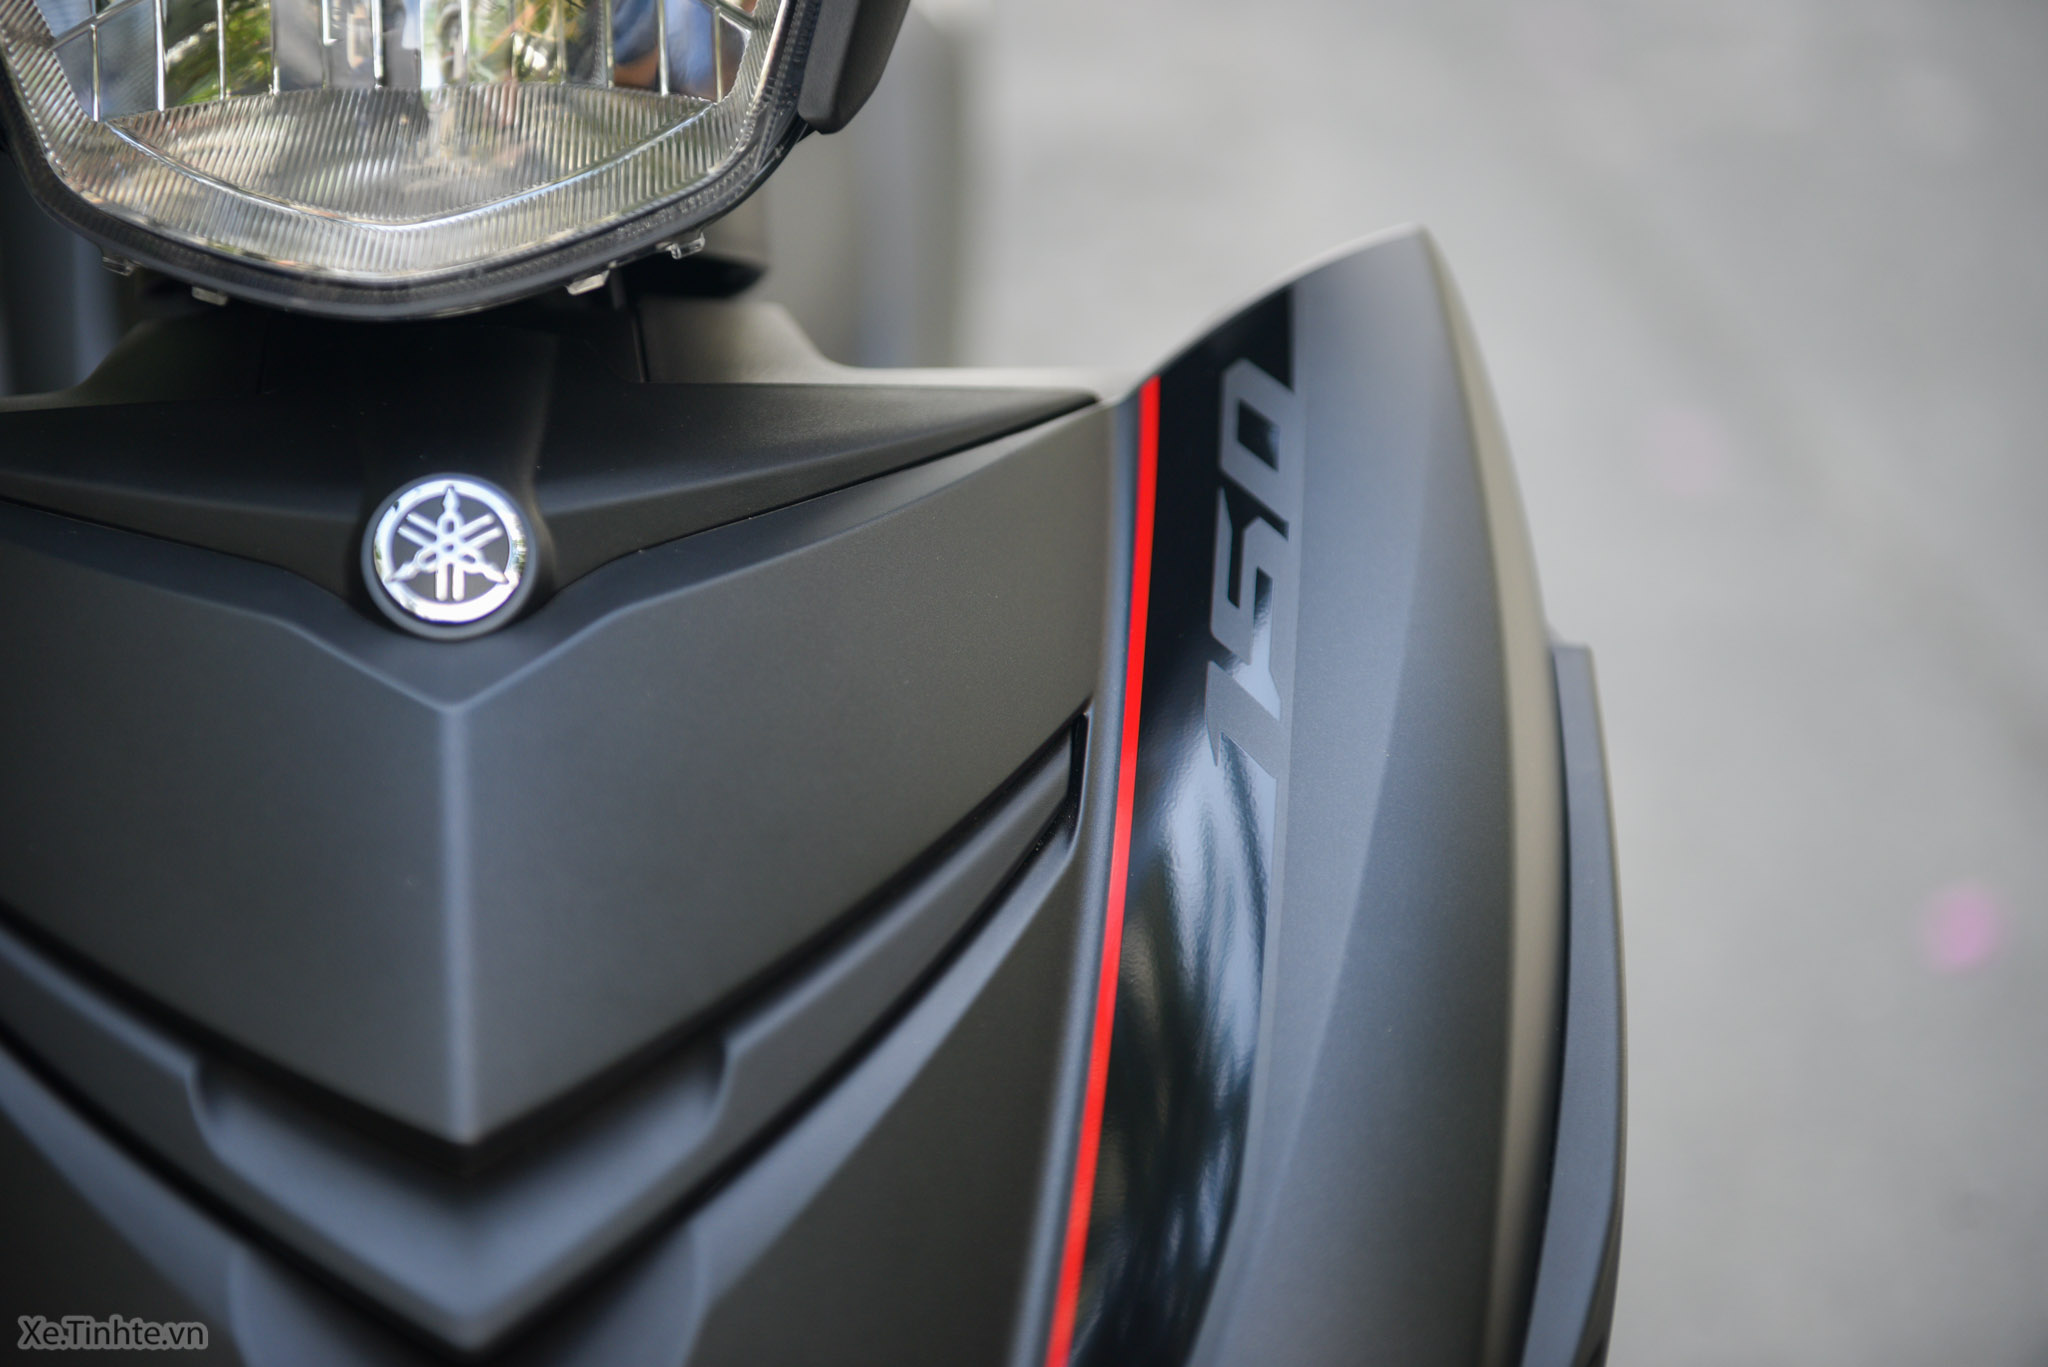 Video] Yamaha Exciter 150 màu đen nhám; nhìn ngầu hơn; mạnh mẽ hơn ... - Yamaha Exciter 150 màu đen nhám sẽ gây ấn tượng và chinh phục bạn bằng sự mạnh mẽ, ngầu đi kèm với độ linh hoạt vô cùng đáng kinh ngạc trên mọi cung đường. Hãy cùng xem video đầy chất lượng này để cảm nhận điều đó.